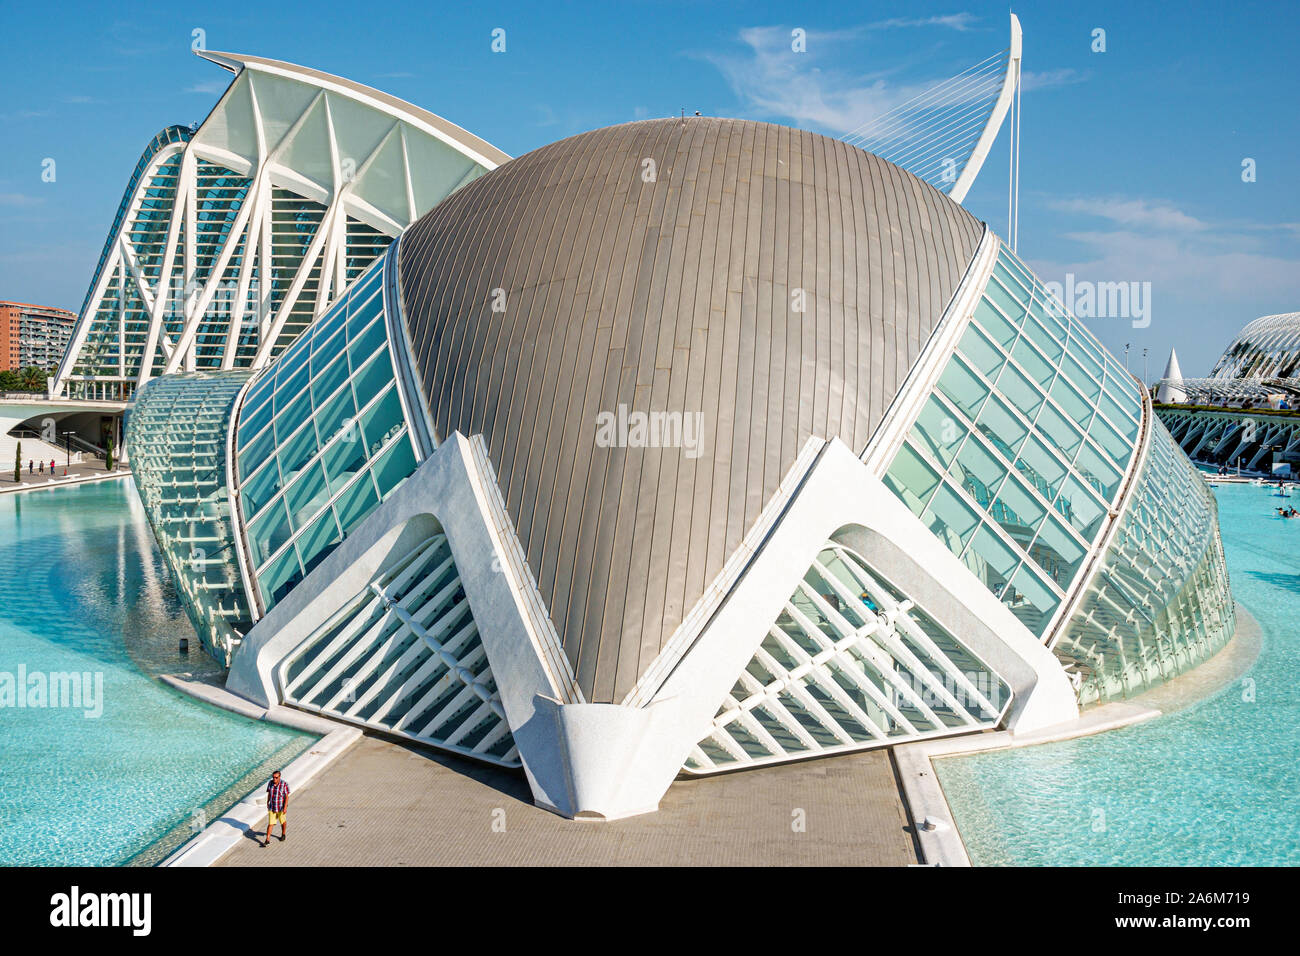 Valencia Spain,las Artes y las Ciencias,City of Arts & Sciences,Santiago Calatrava,architecture,L'Hemisferic planetarium laserium,exterior,water pool, Stock Photo